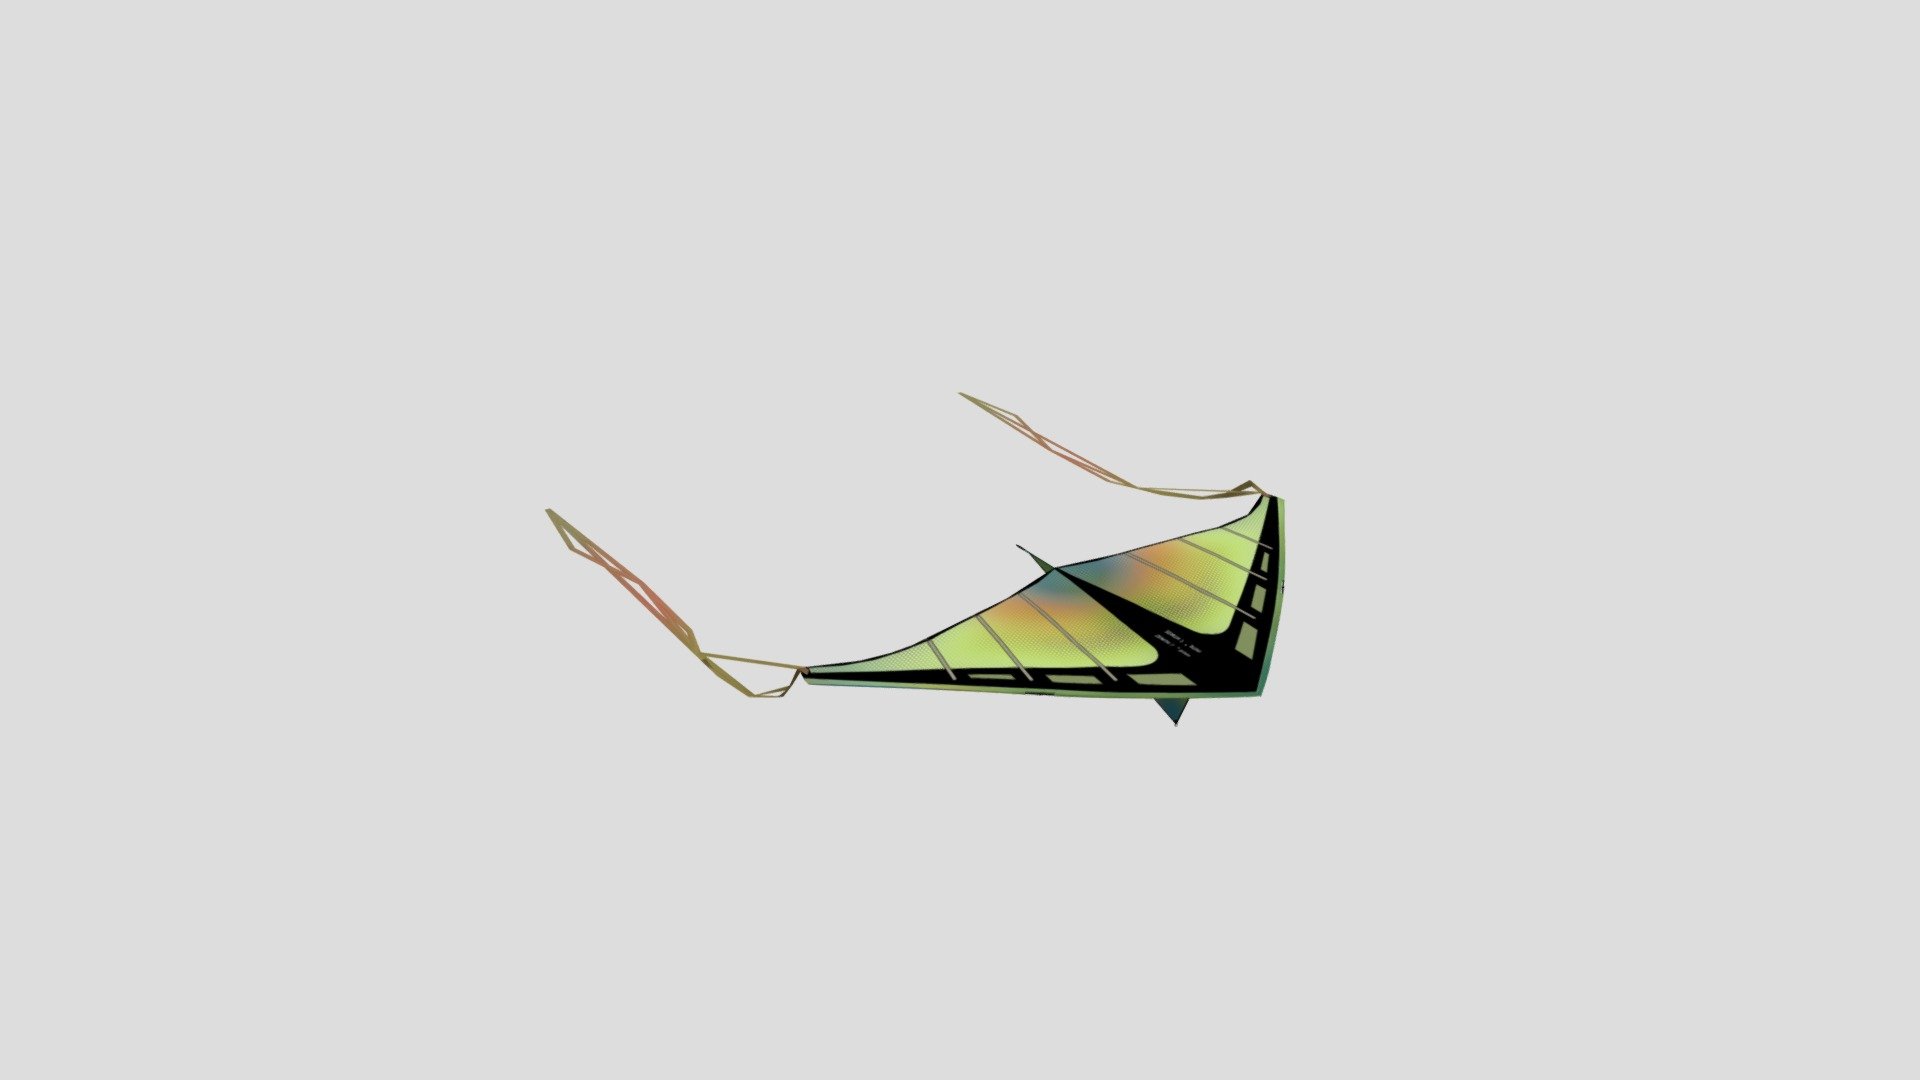 kite - Kite - 3D model by TreasuredTeam 3d model